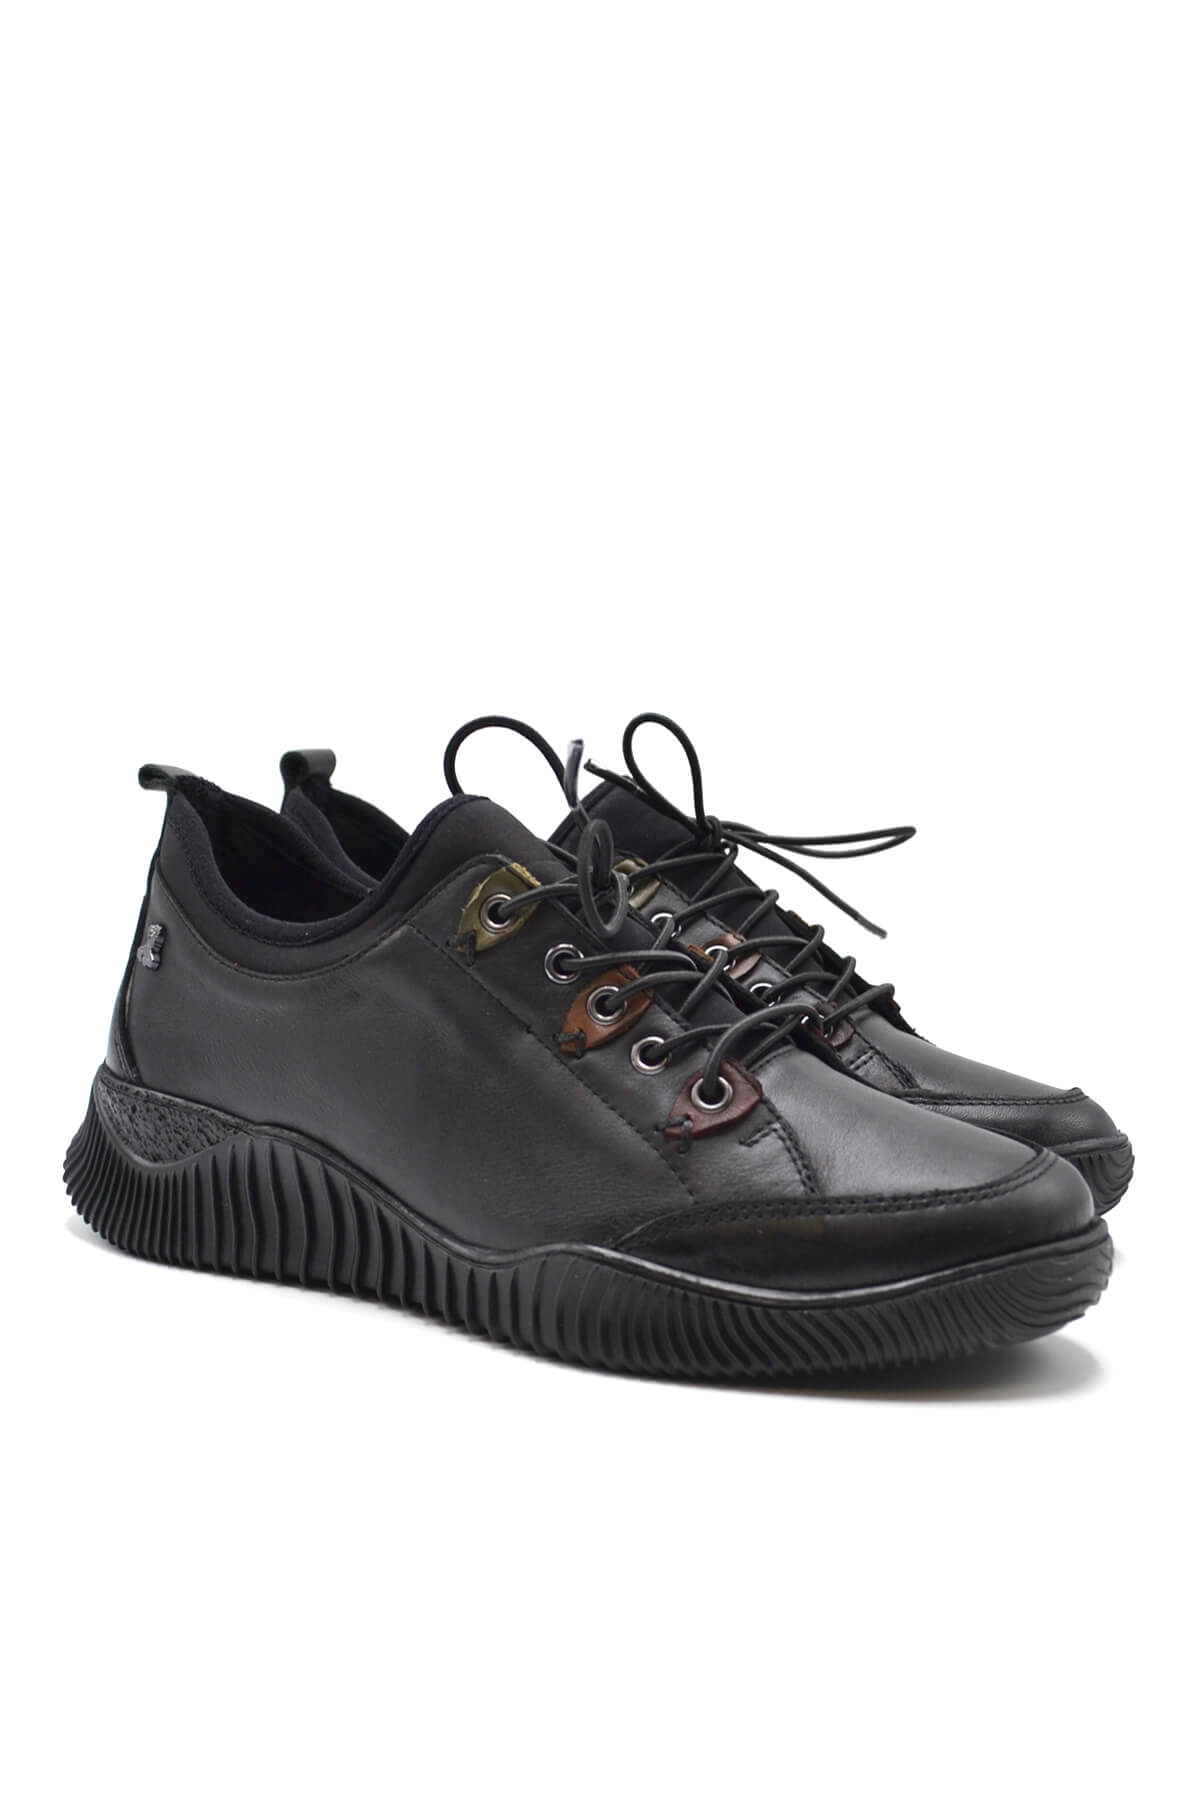 Kadın Comfort Deri Ayakkabı Siyah 1953855K - Thumbnail